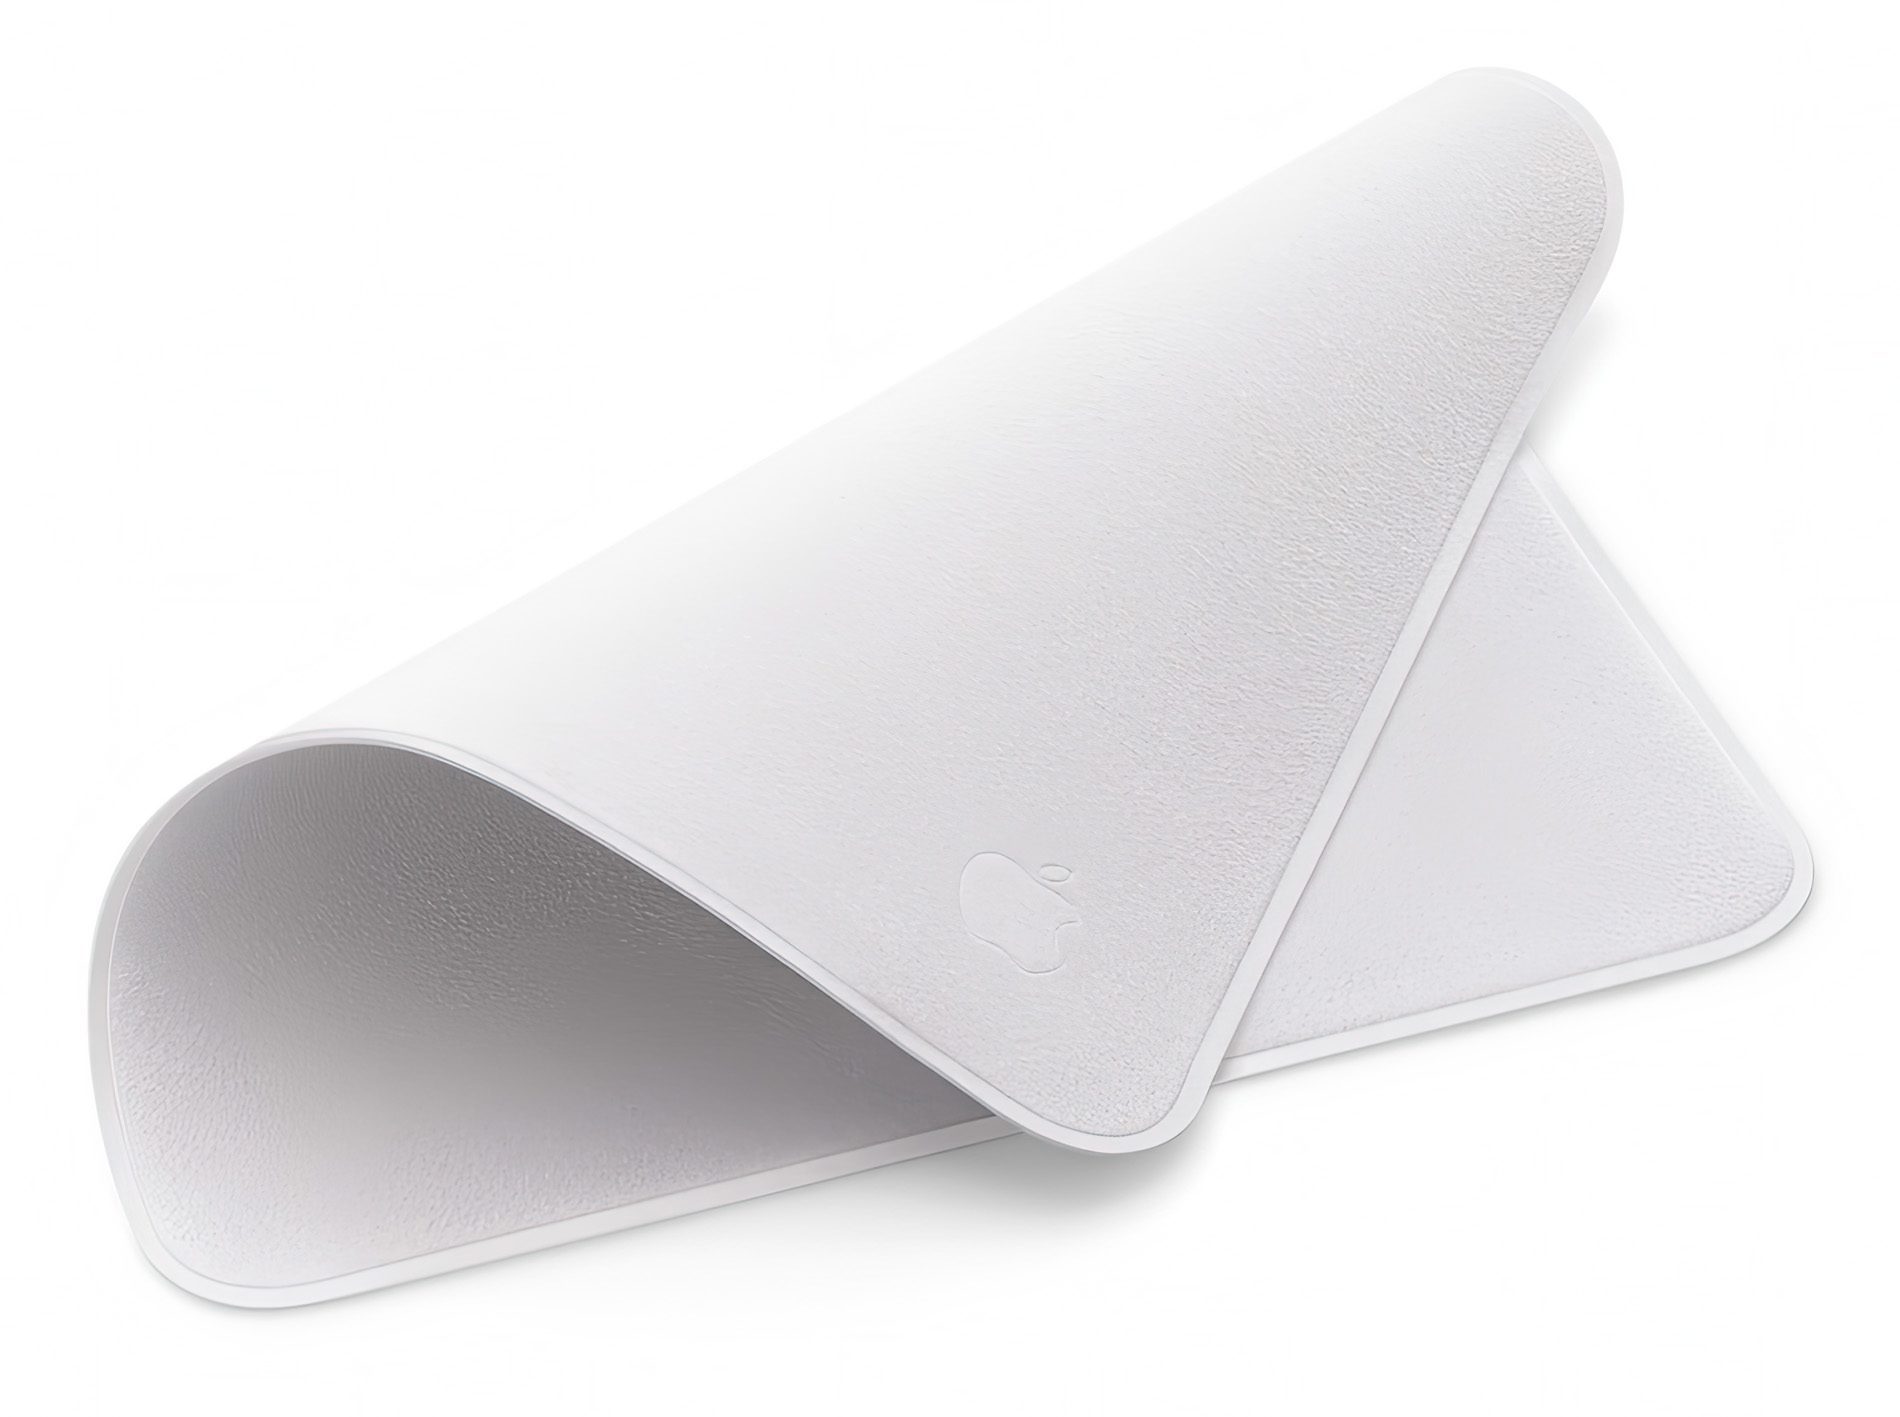 In der Realität sieht das Apple-Tuch deutlich grauer aus, als auf dem Produktbild (Foto: Apple).